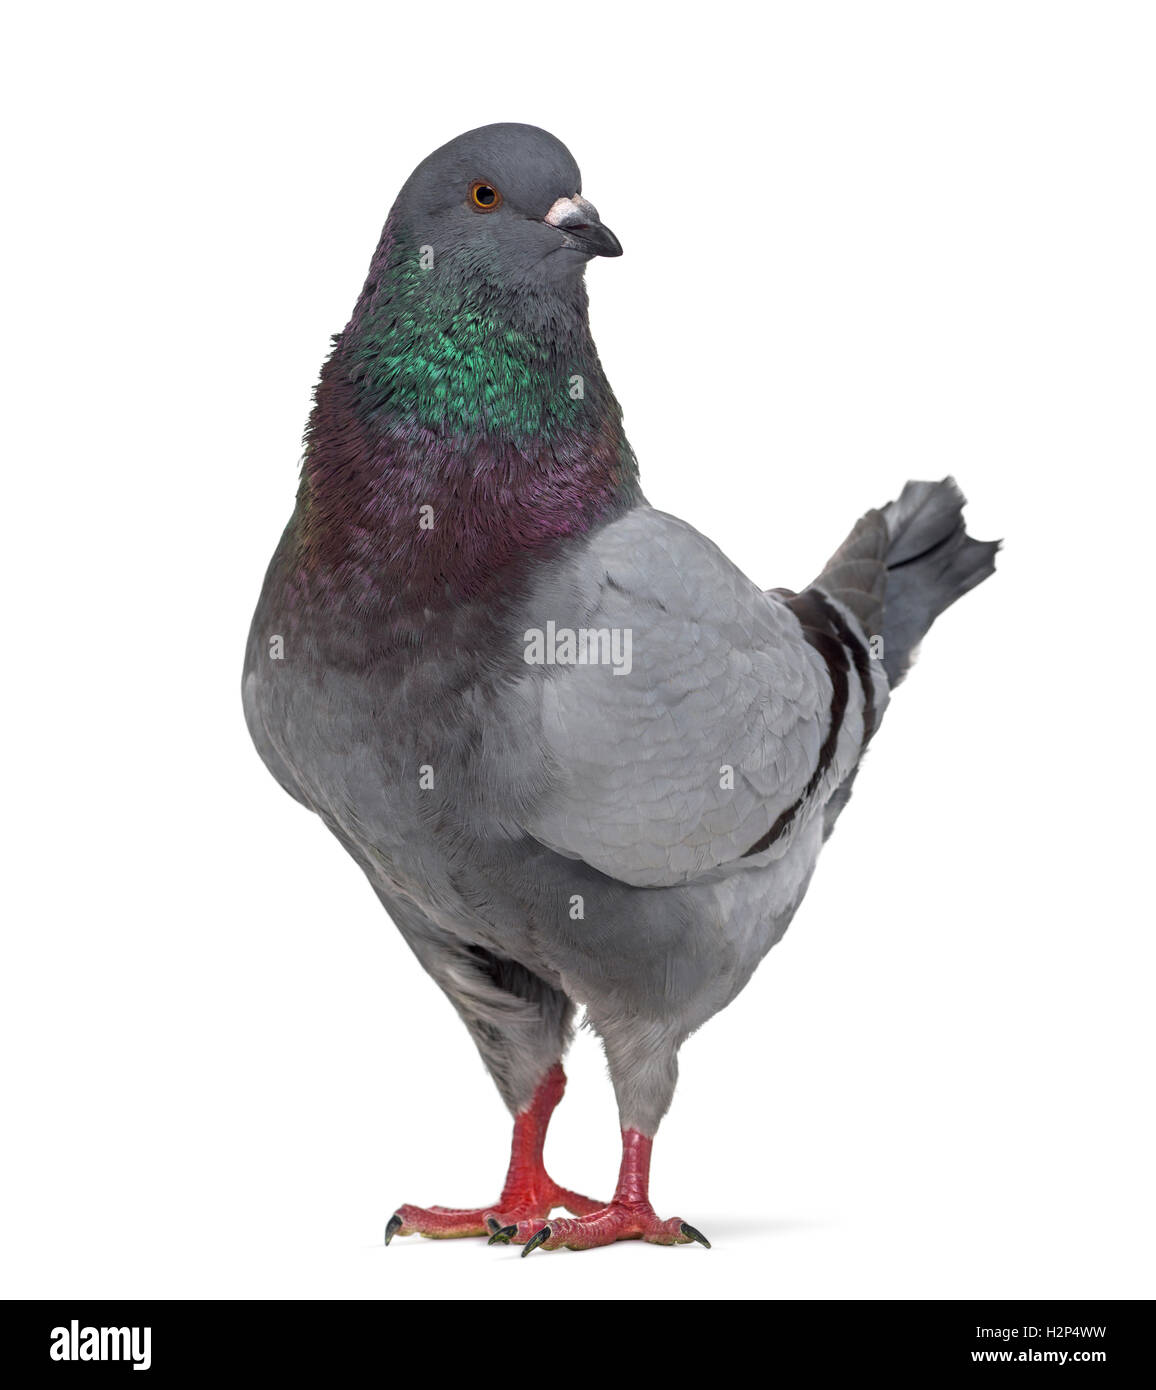 Vista lateral de un rey pigeon interrogatorio aislado en blanco Foto de stock